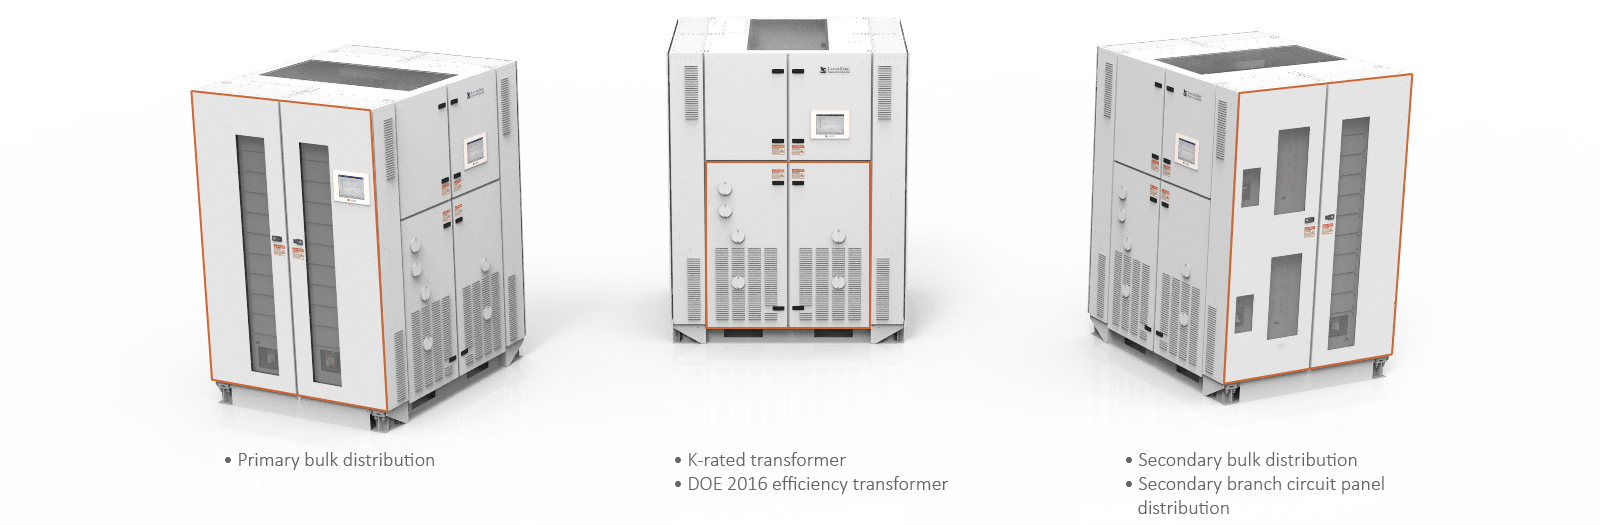 All-in-one PDU design